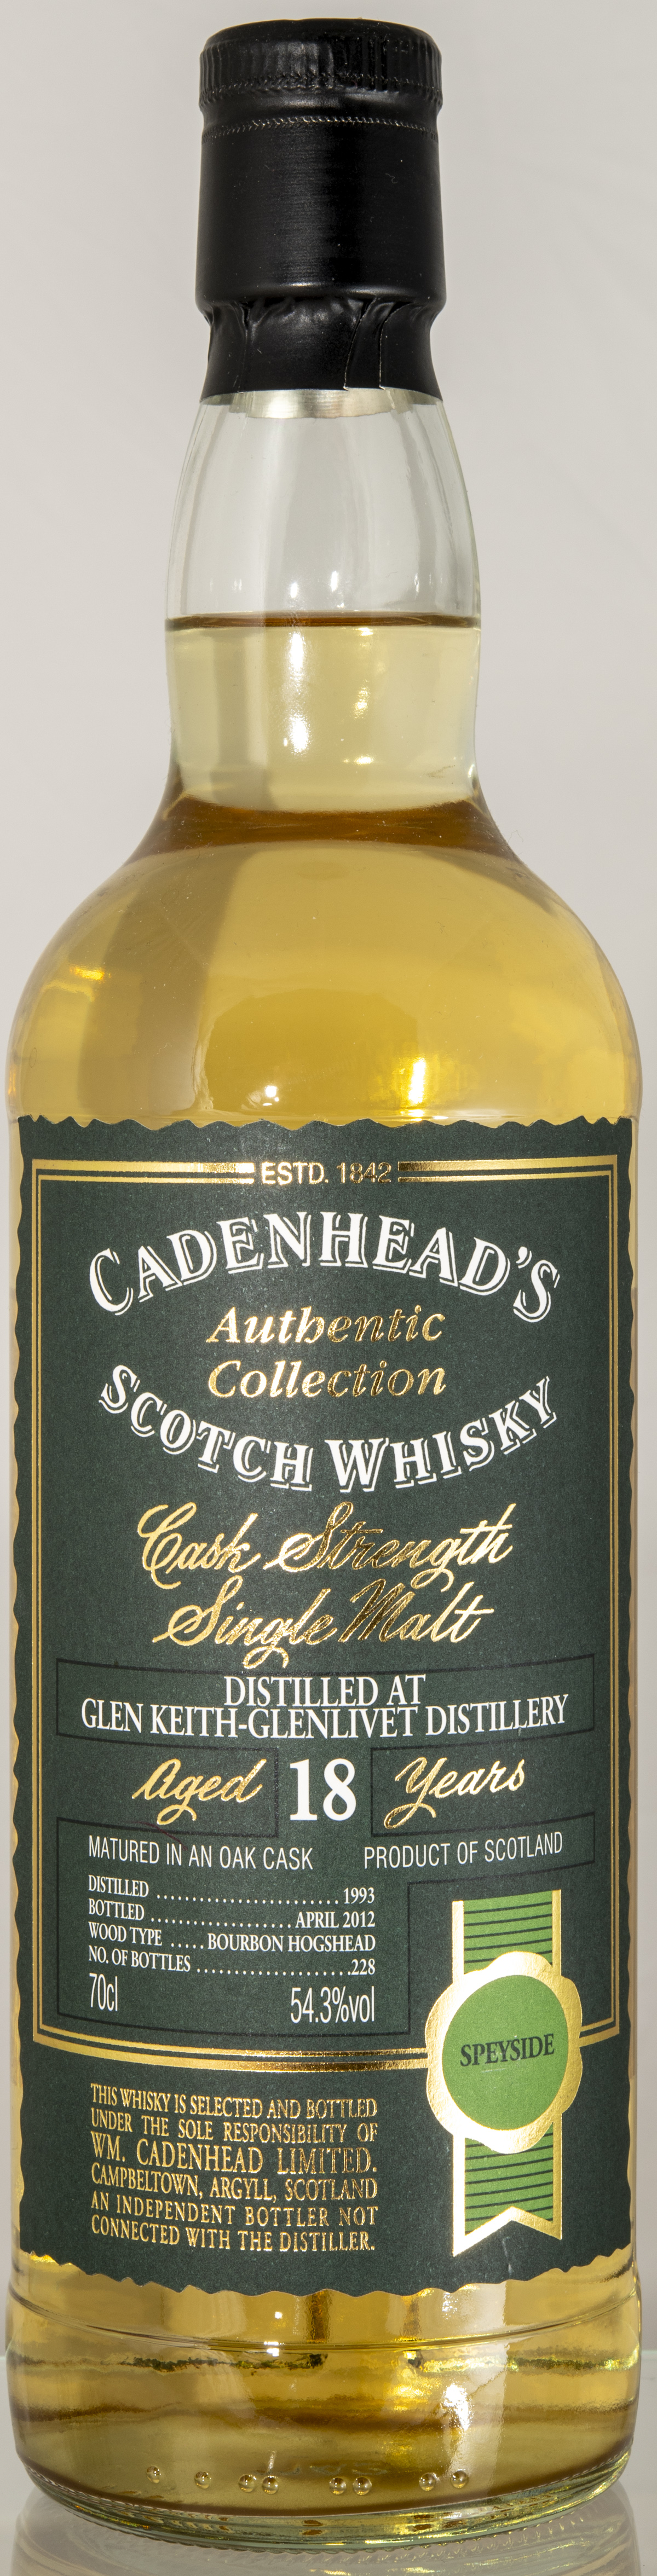 Billede: D85_8336 - Cadenhead Authentic Collection - Glen Keith-Glenlivet 18 - bottle front.jpg